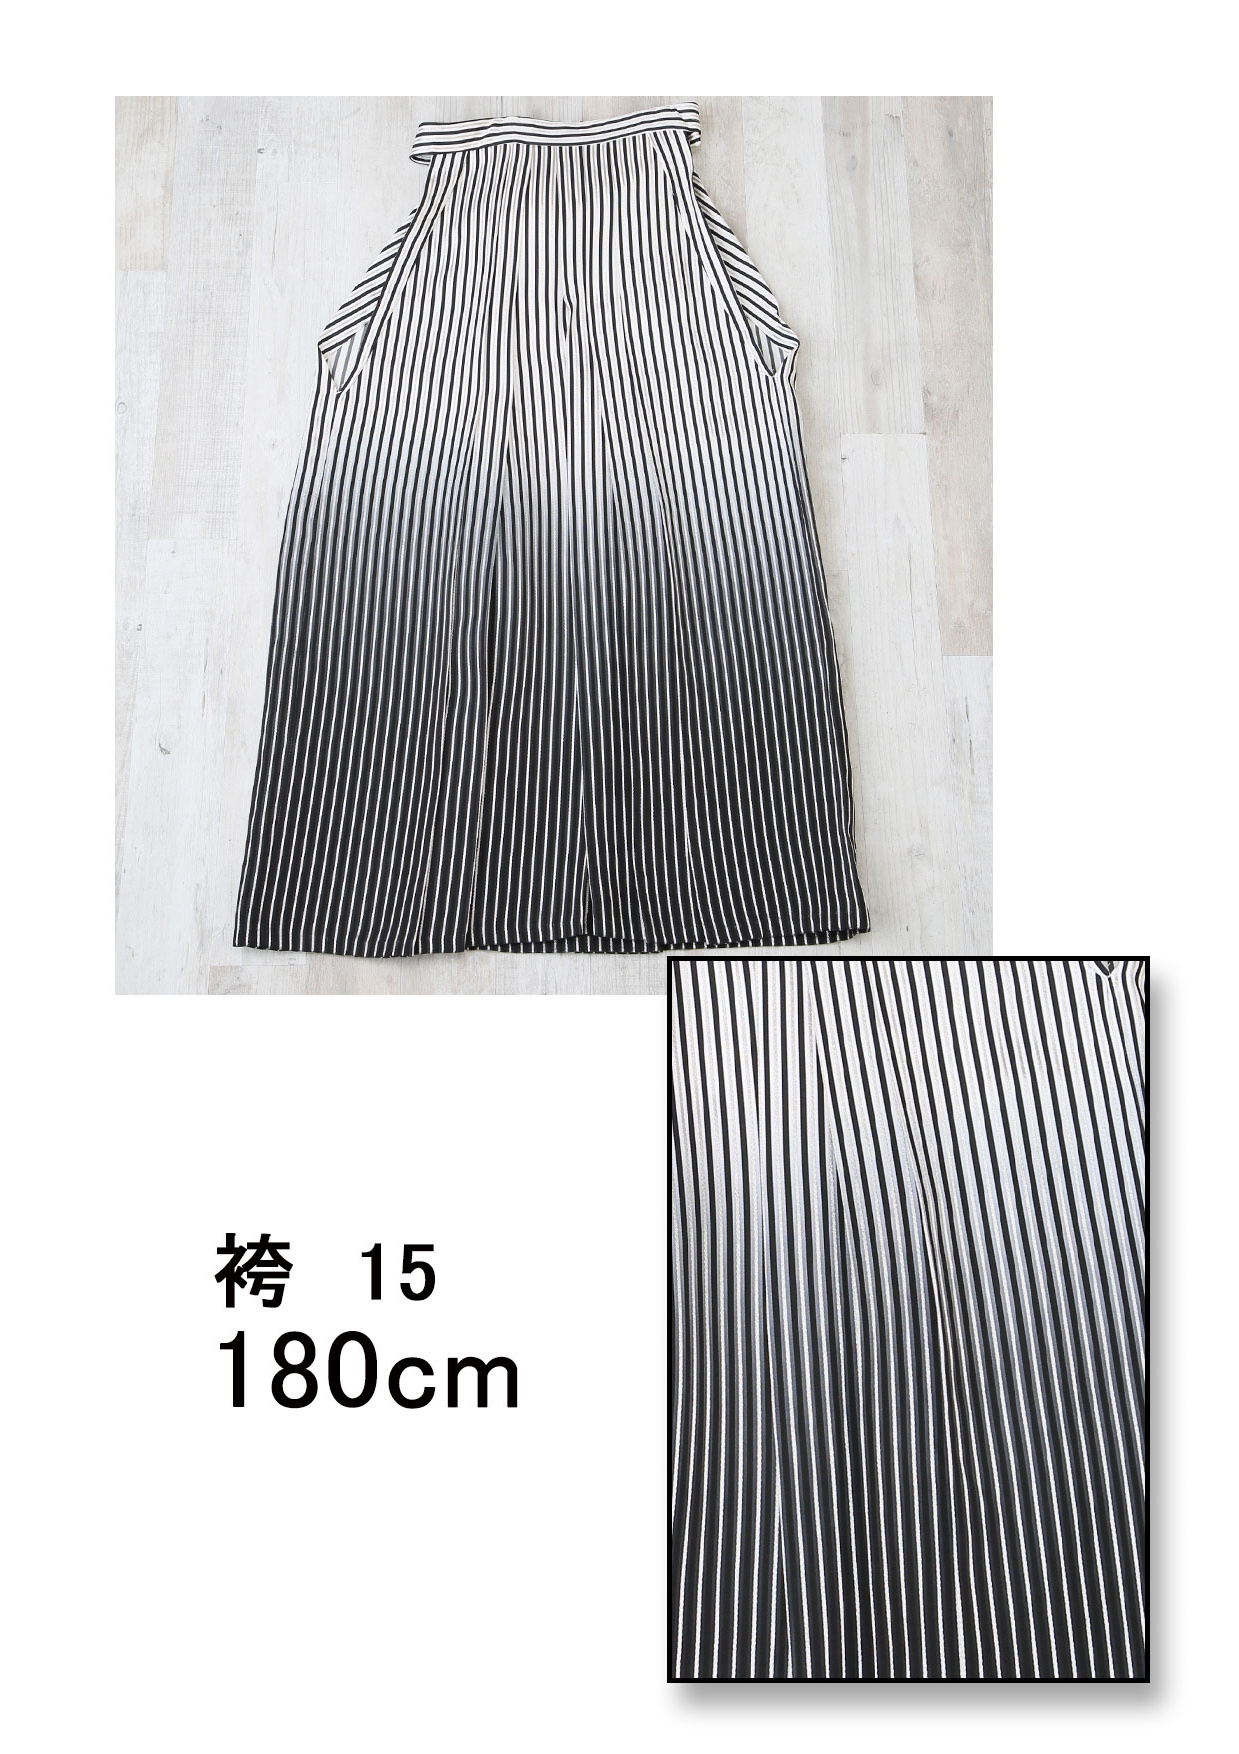 袴No015